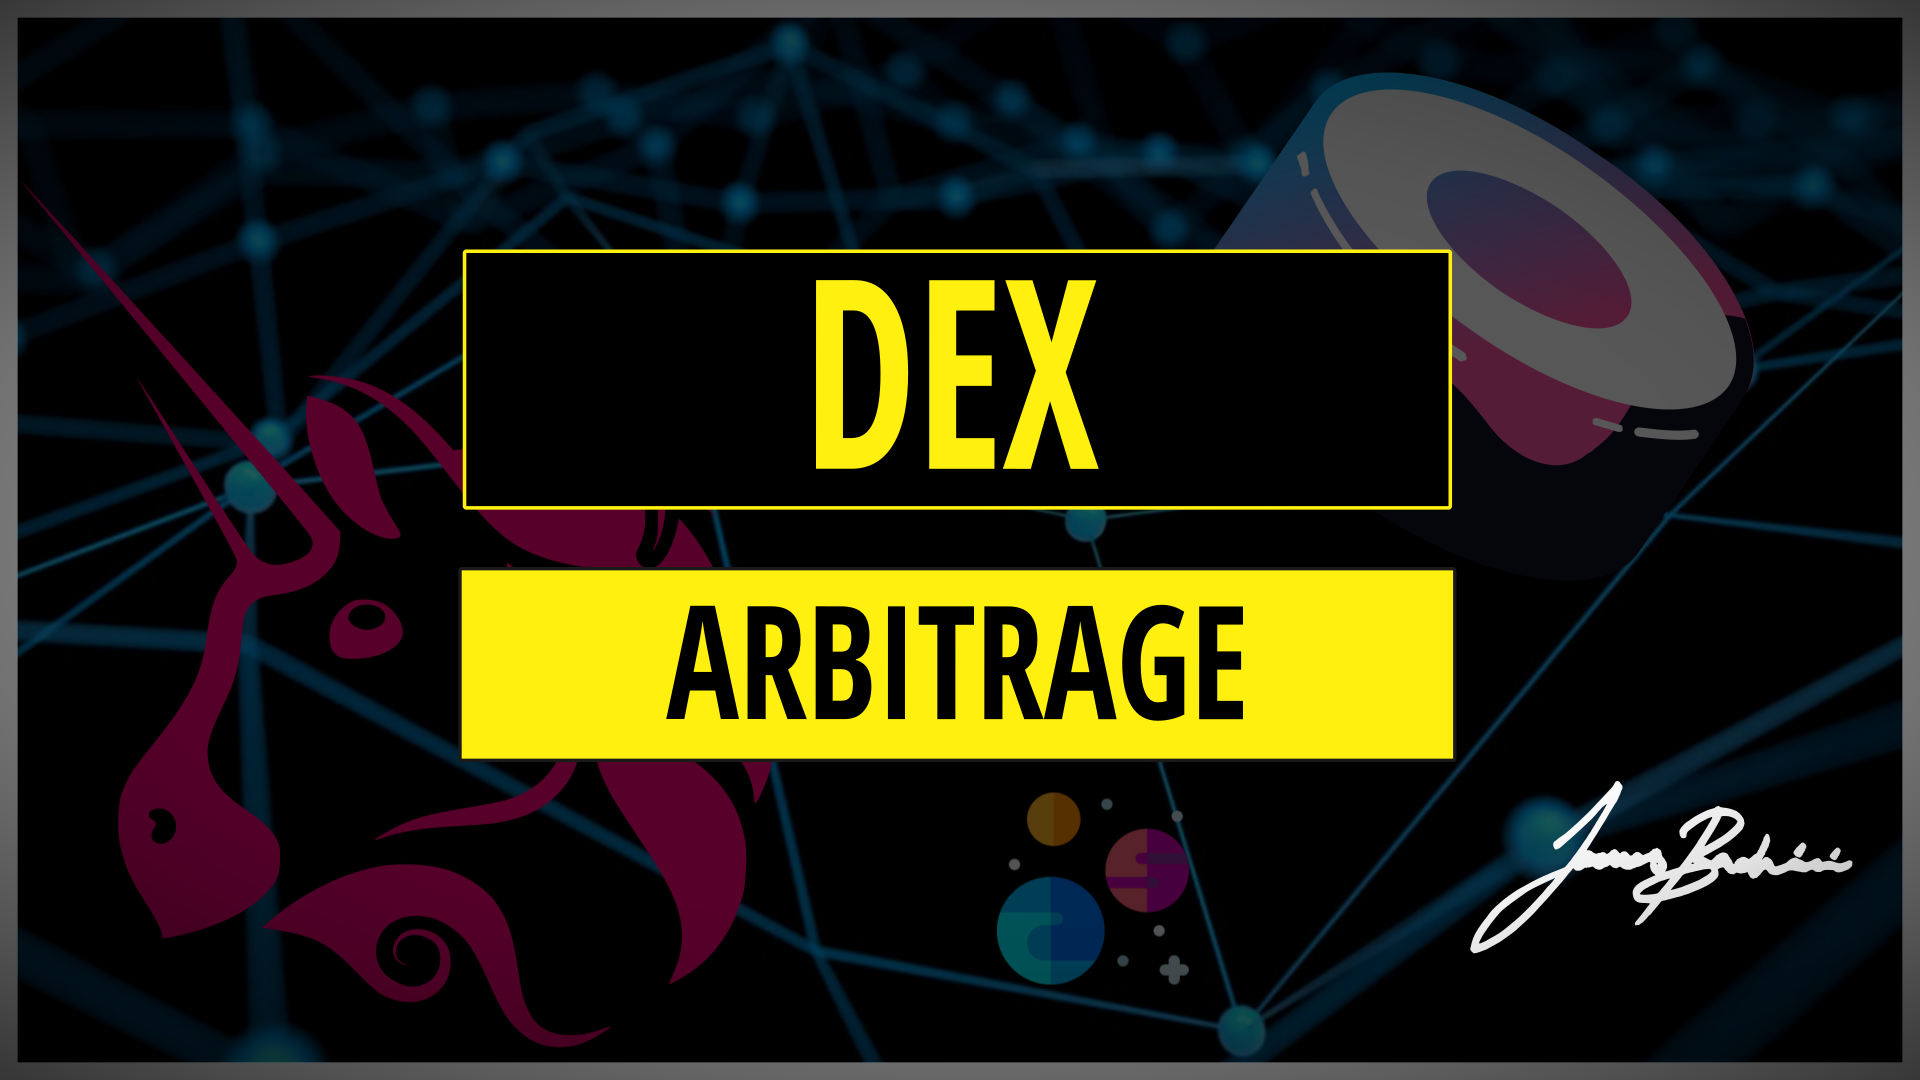 dex arbitrage